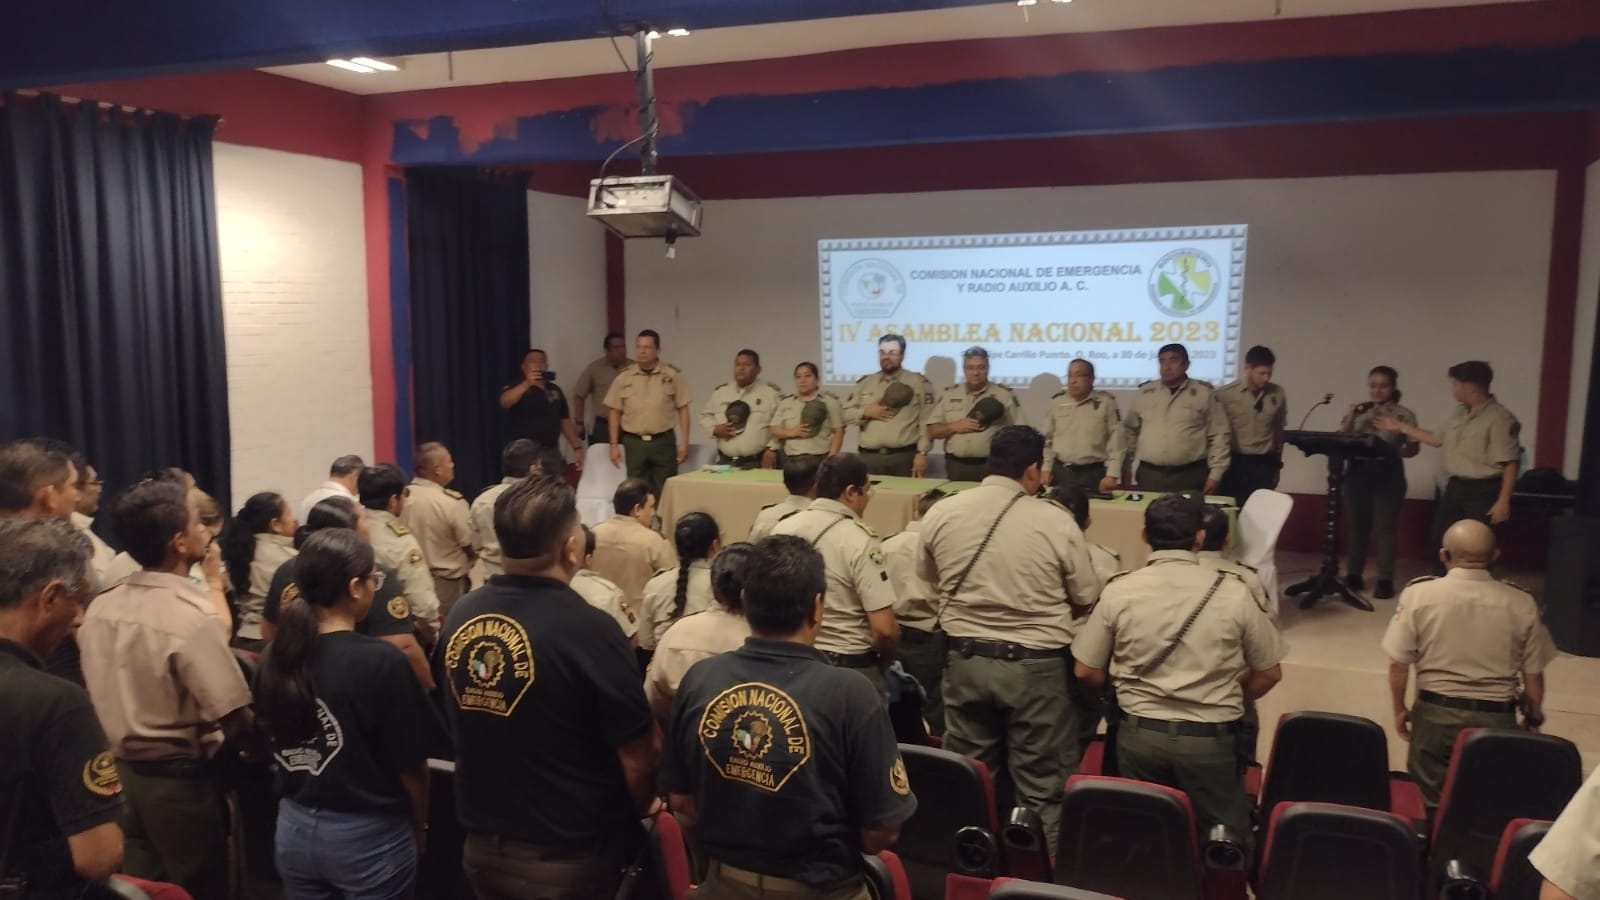 Crean la delegación de la Comisión Nacional de Emergencia y Radio Auxilio A.C. en Chetumal